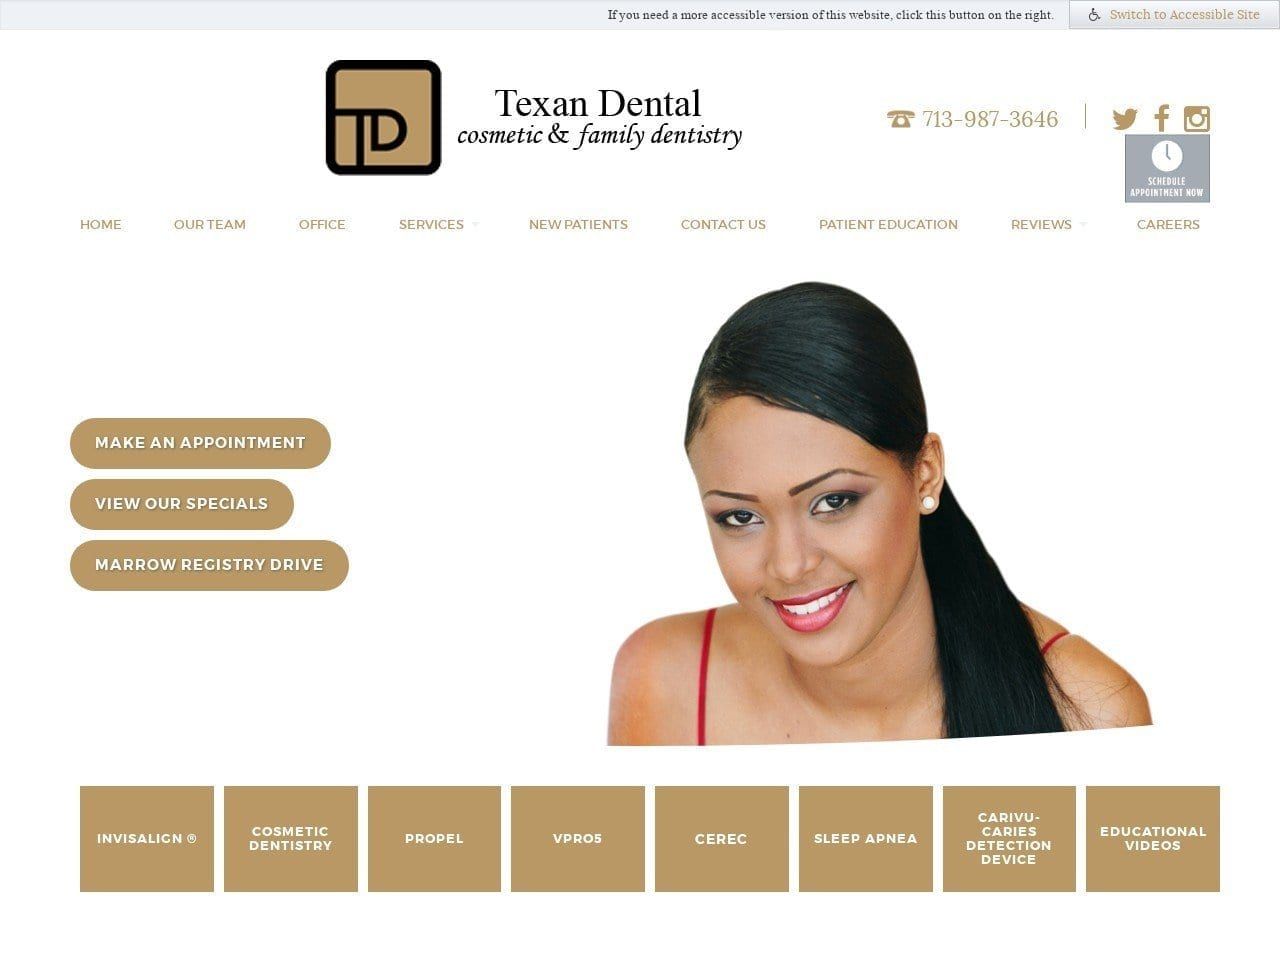 Texan Dental Website Screenshot from texandental.com